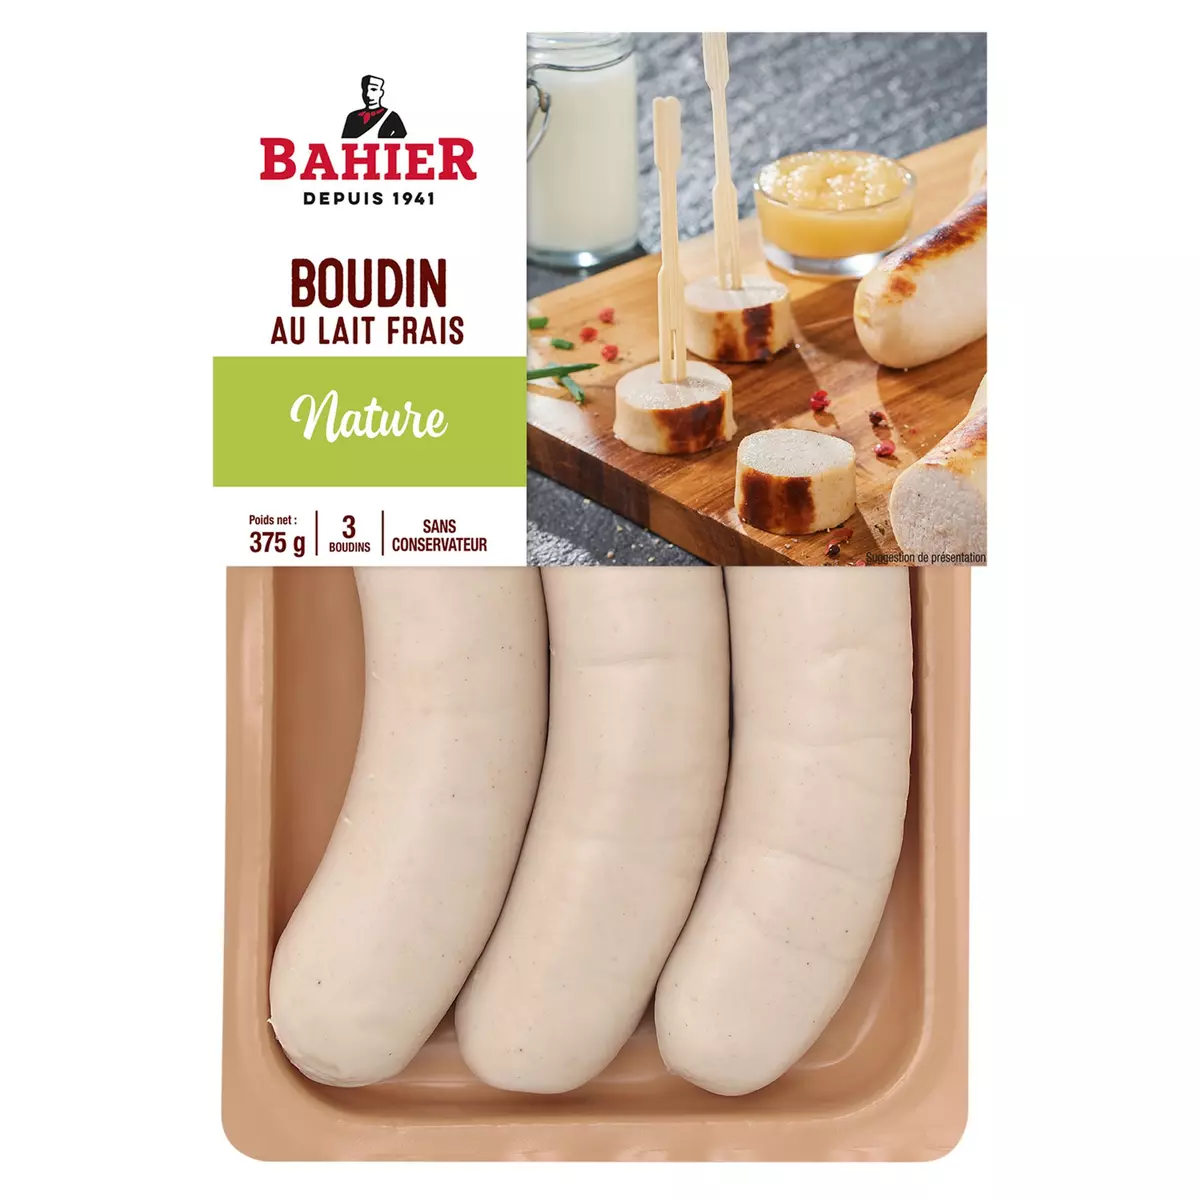 BAHIER Boudin blanc au lait frais nature 3 pièces 375g